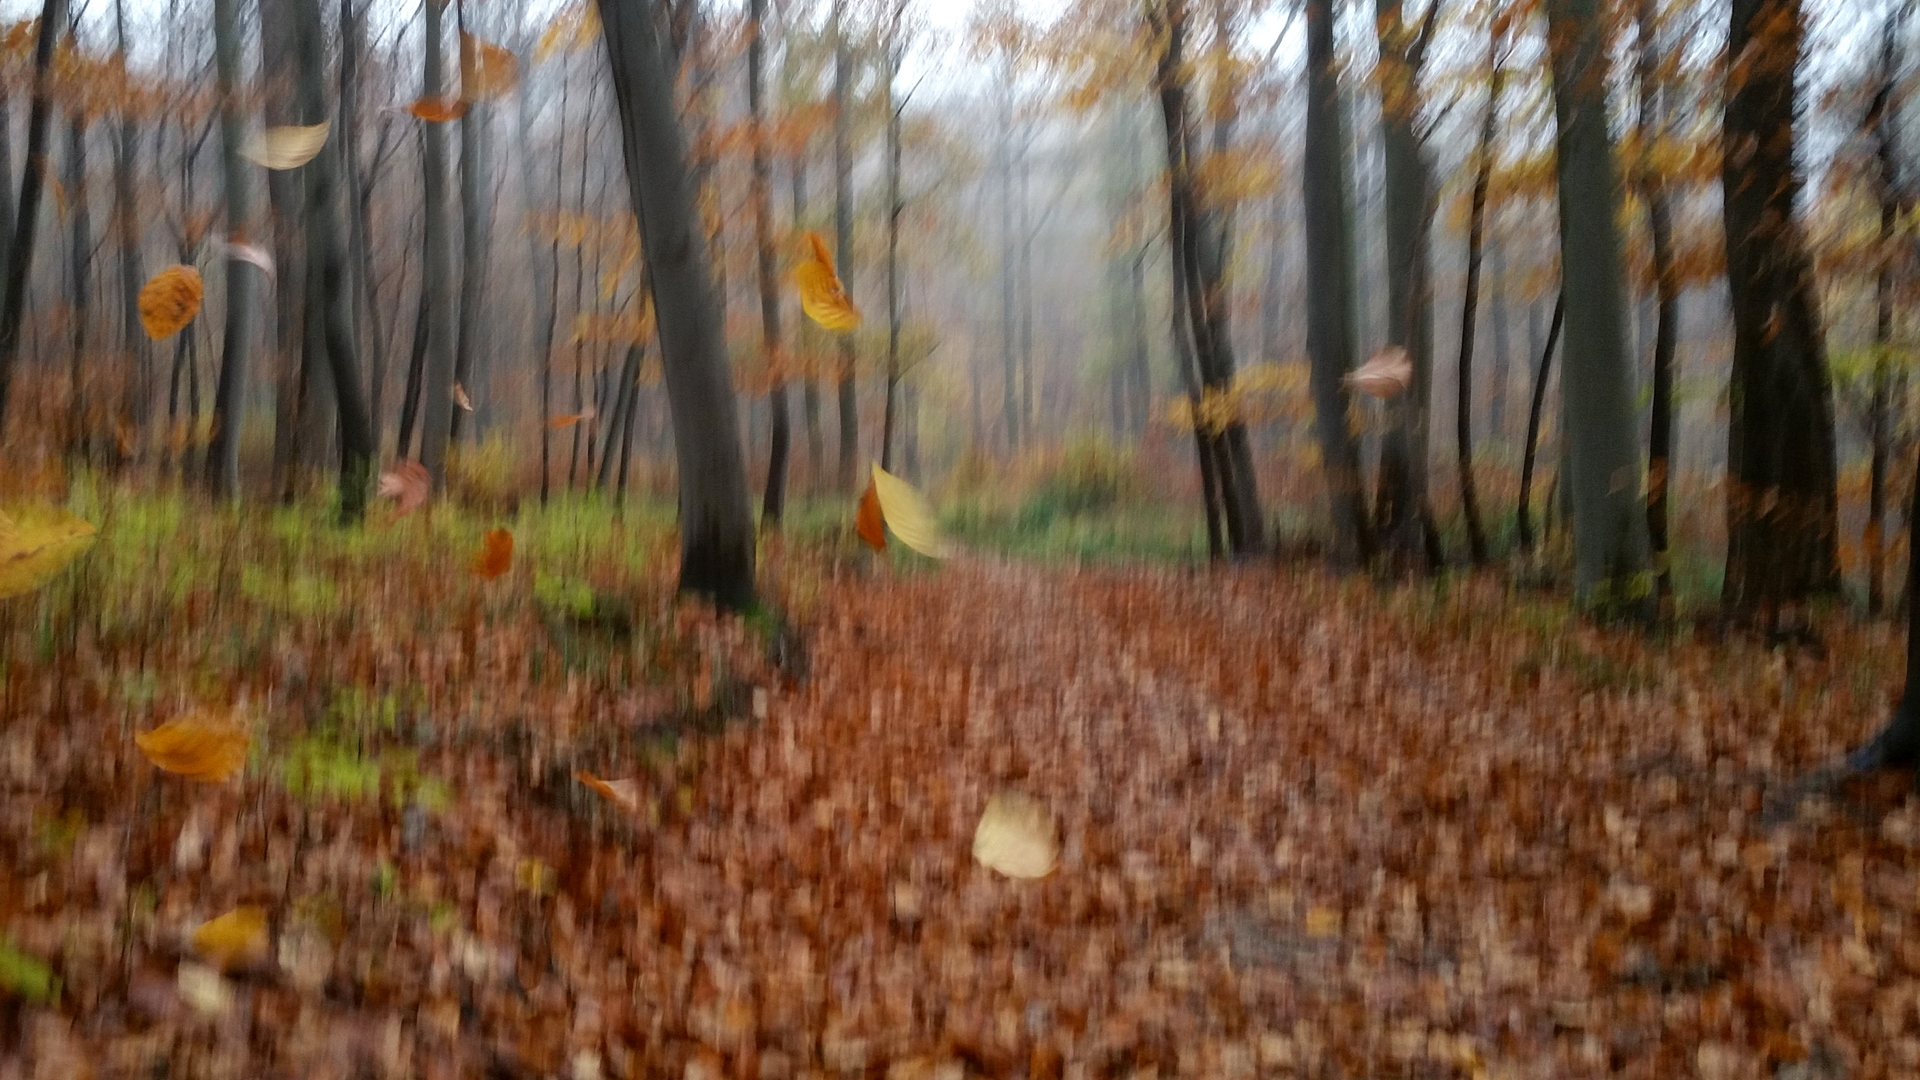 Fotostrecke Herbst Abbildung 31: Das Fallen der Blätter